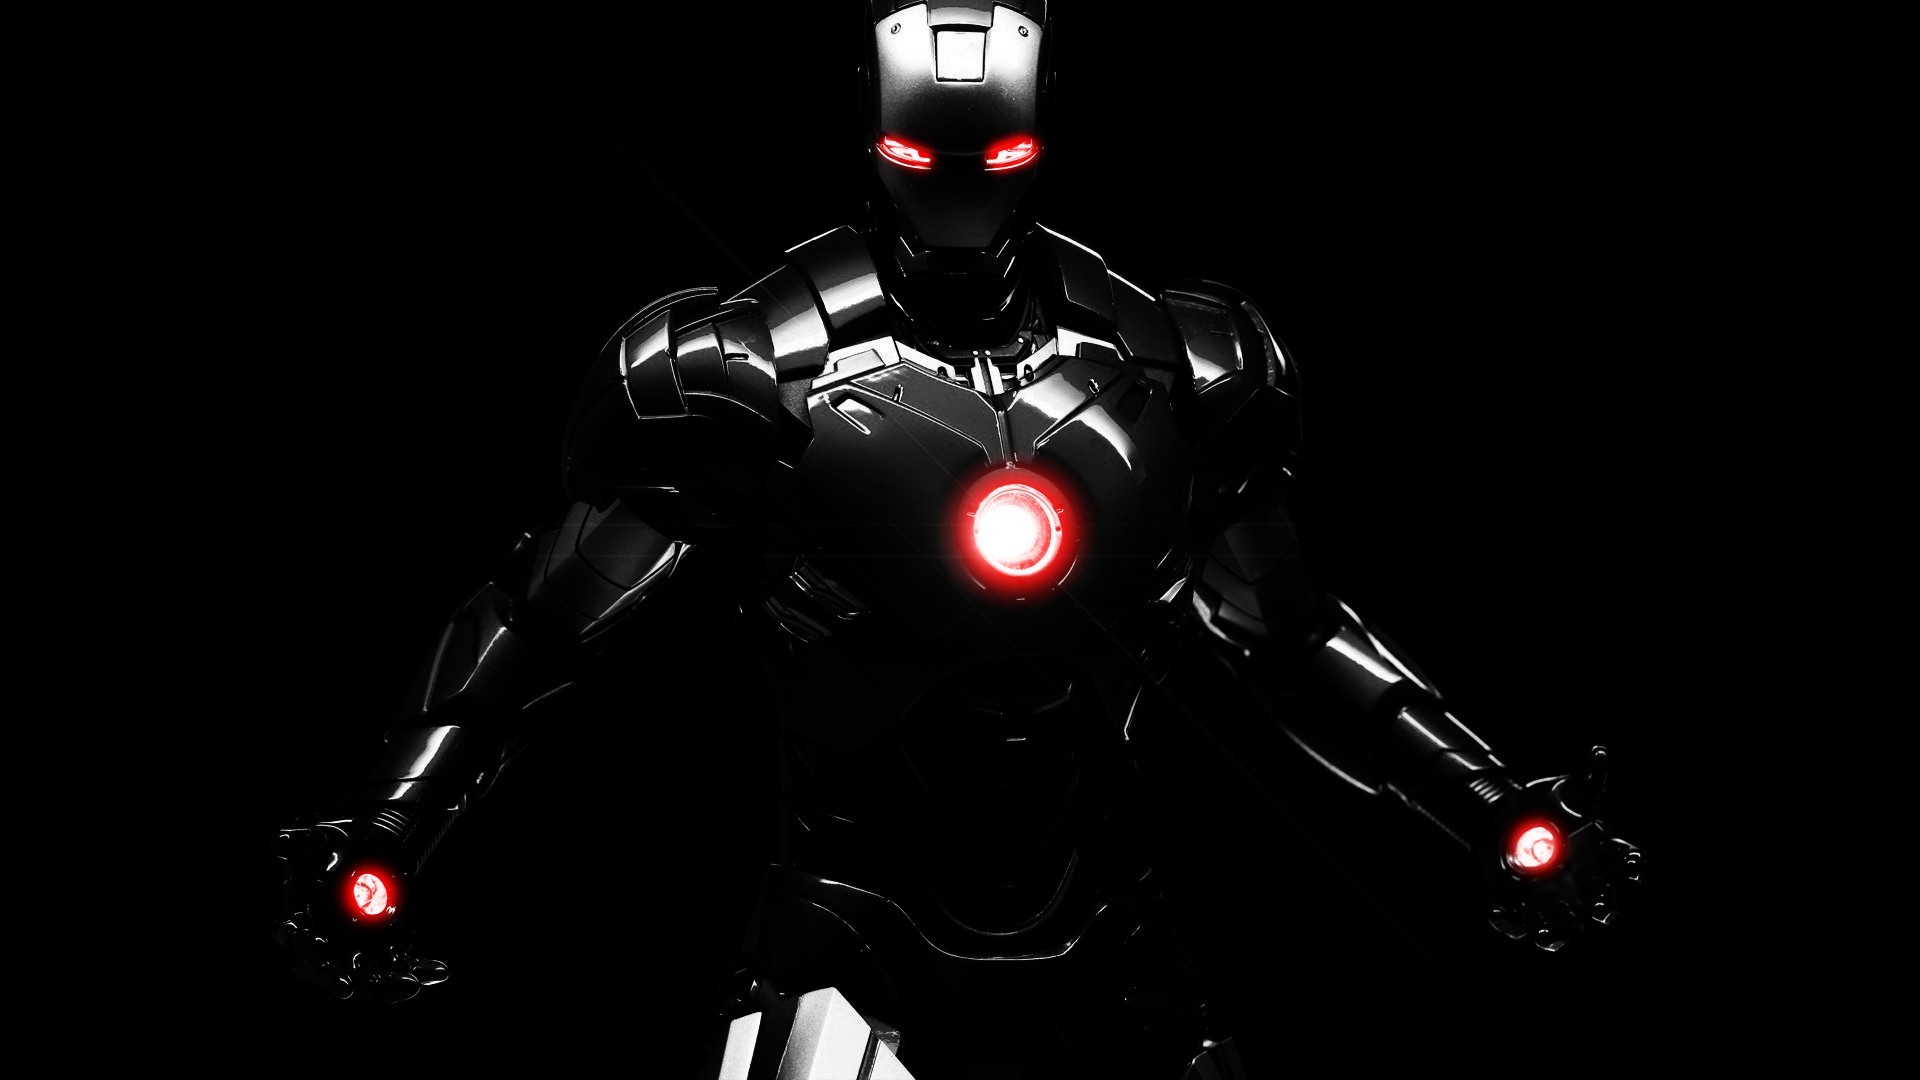 Iron Man Armor In The Dark Full HD